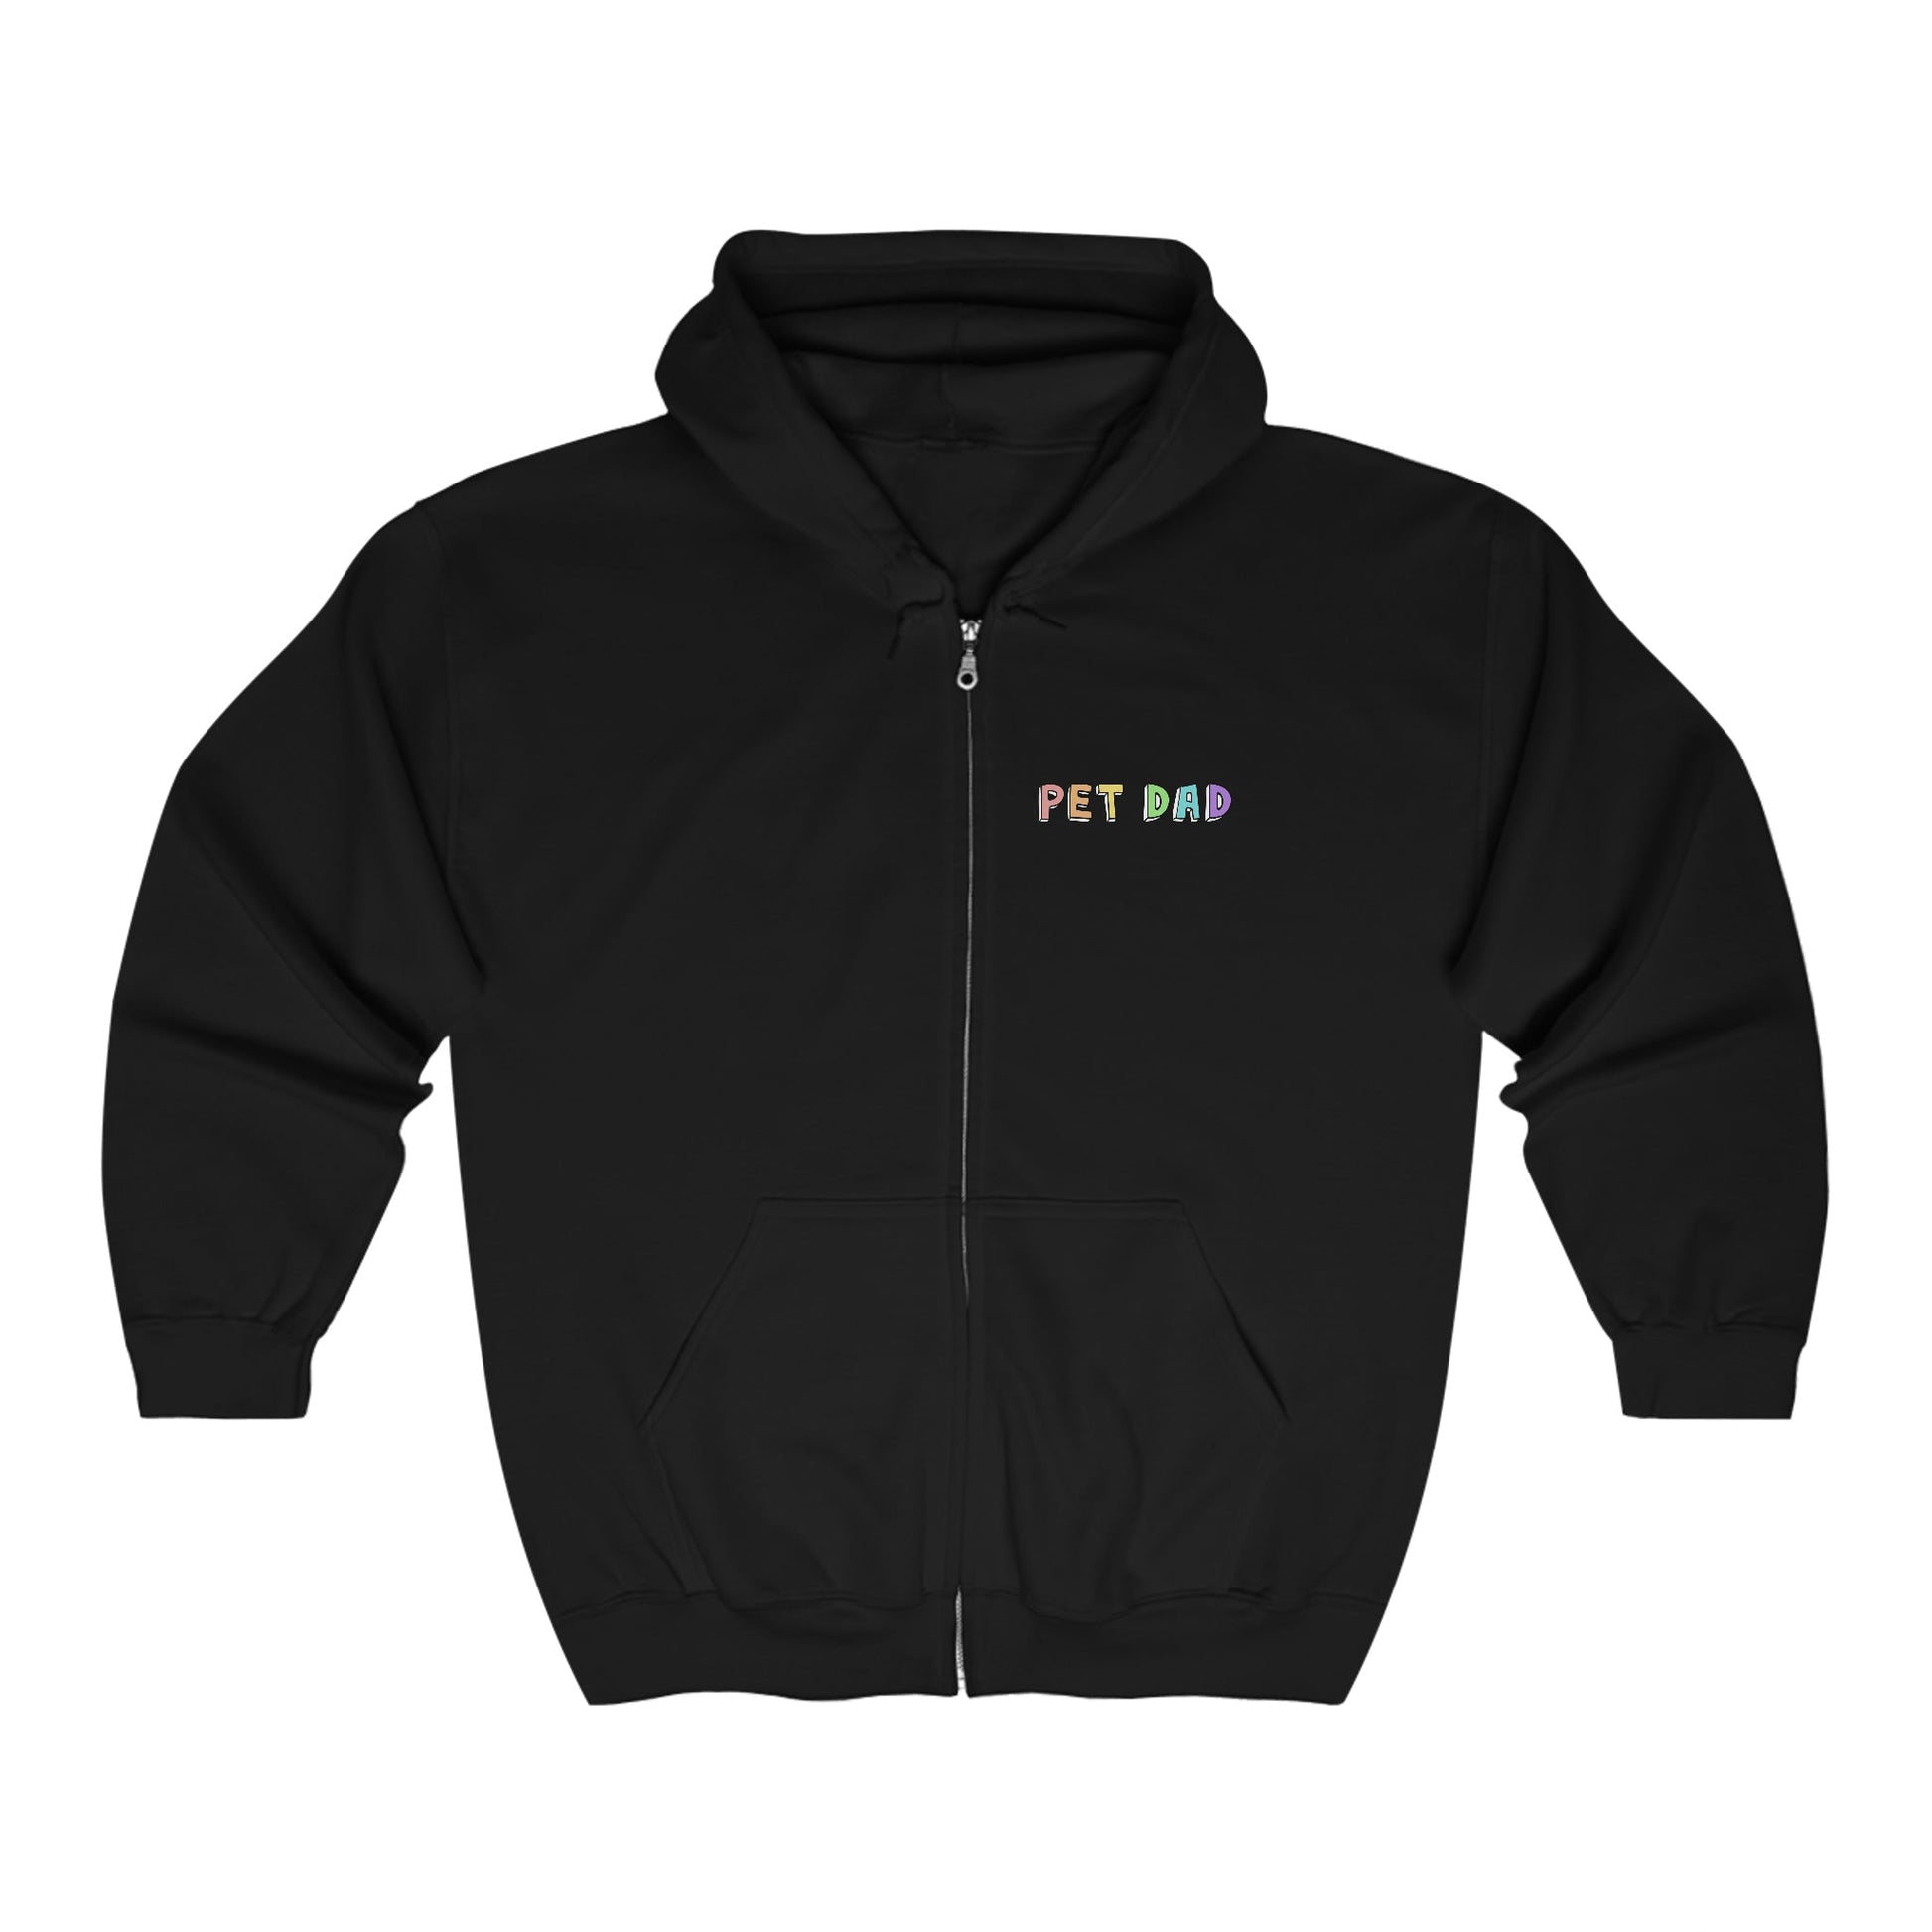 Pet Dad | Zip-up Sweatshirt - Detezi Designs-68623552629471661612